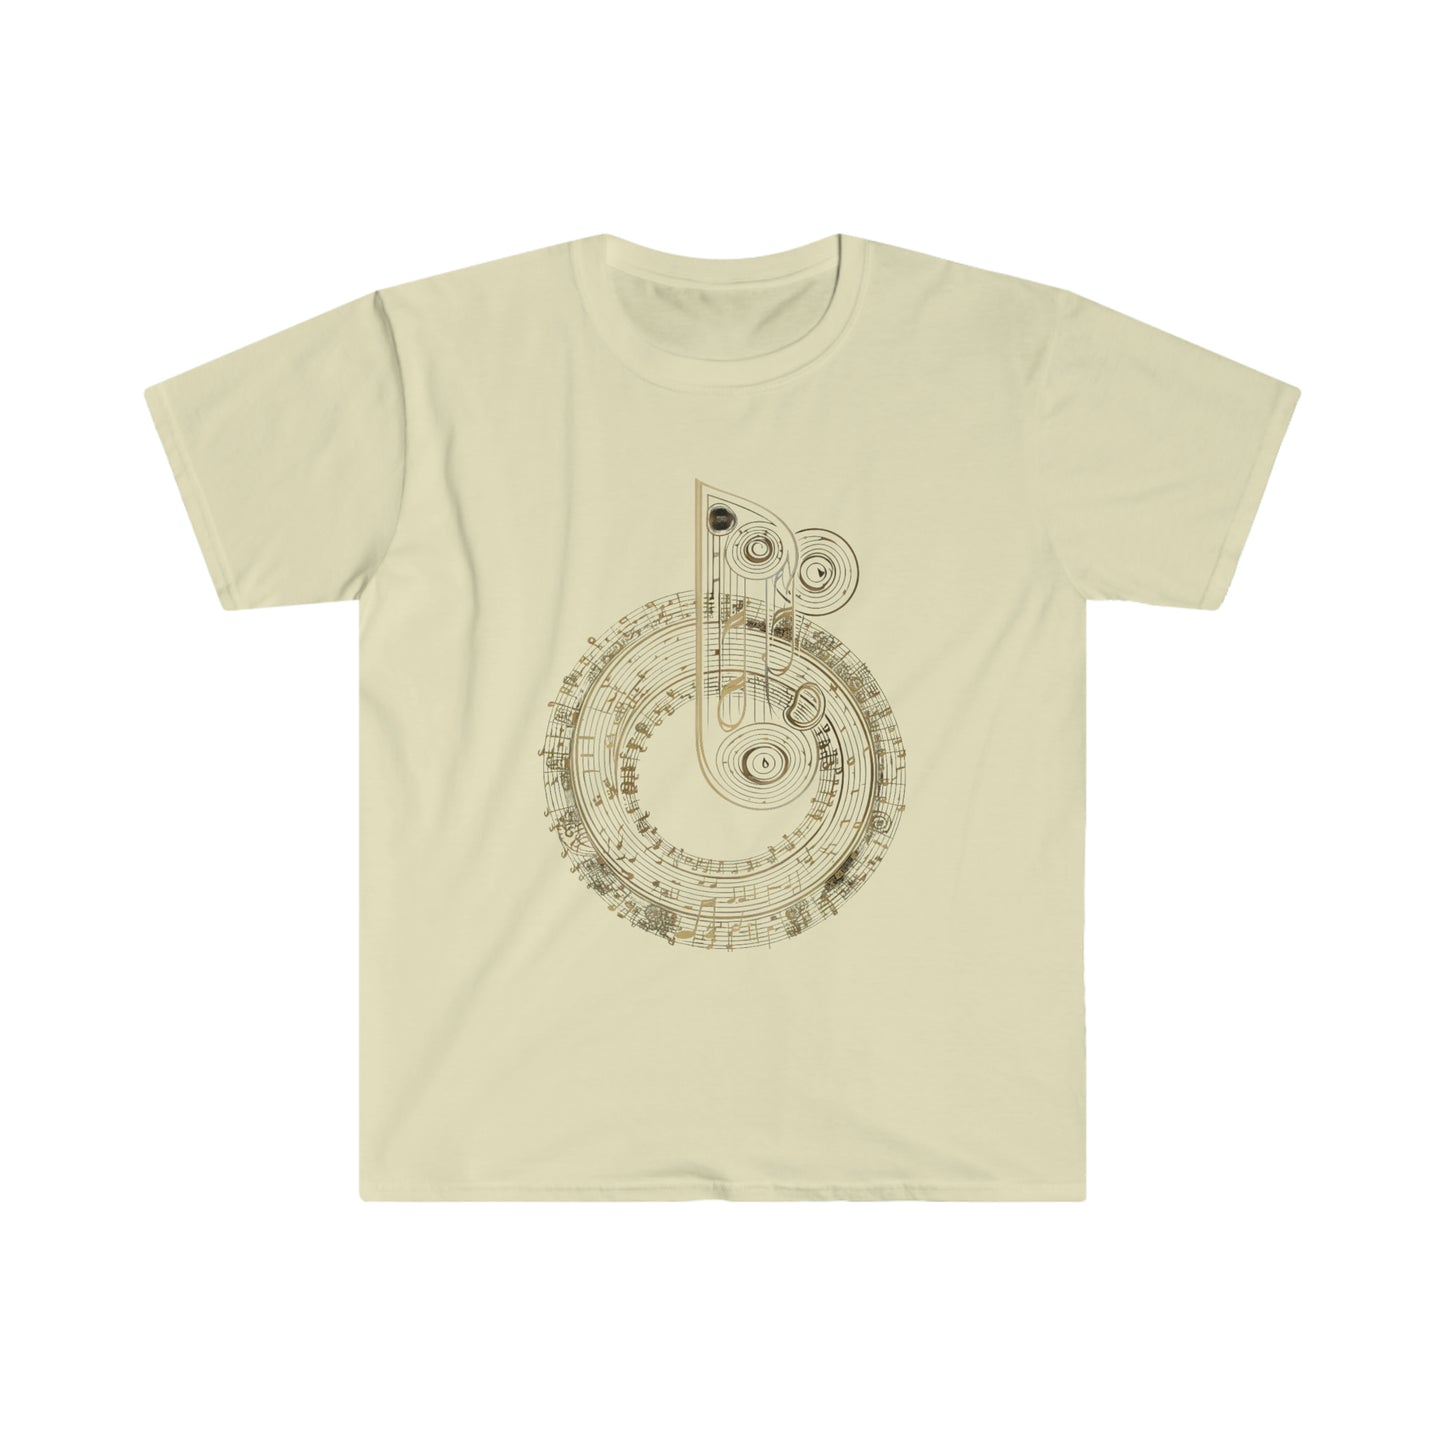 Key Change - Unisex Softstyle T-Shirt